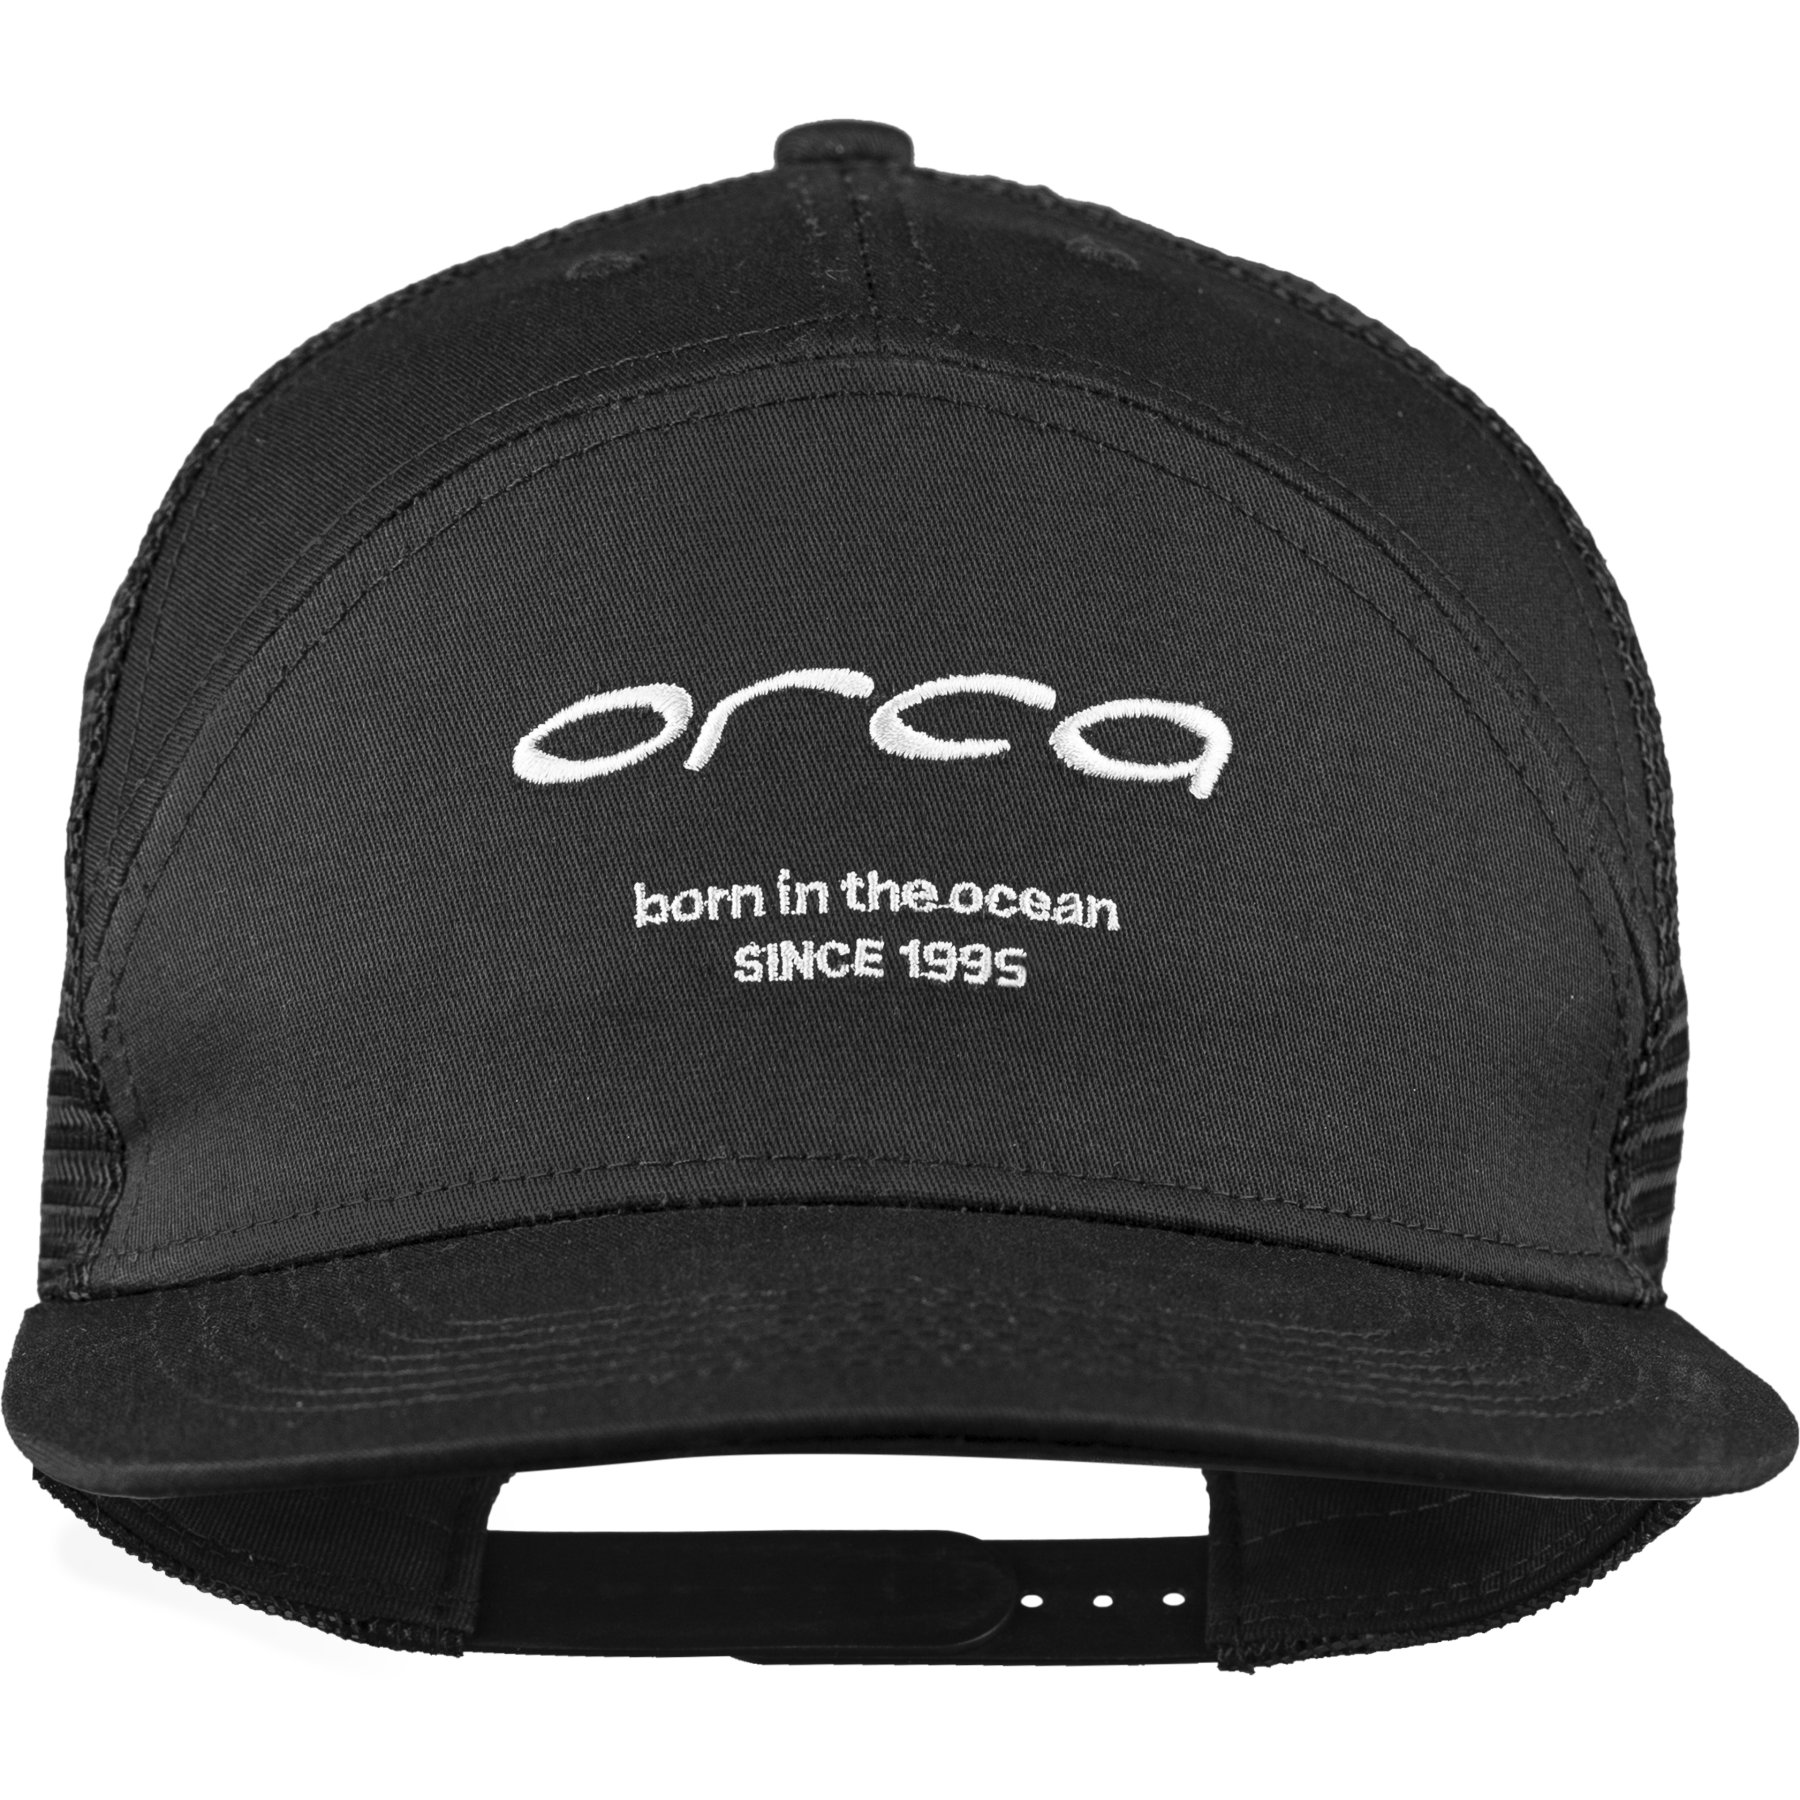 Produktbild von Orca Plane Visor Cap - schwarz